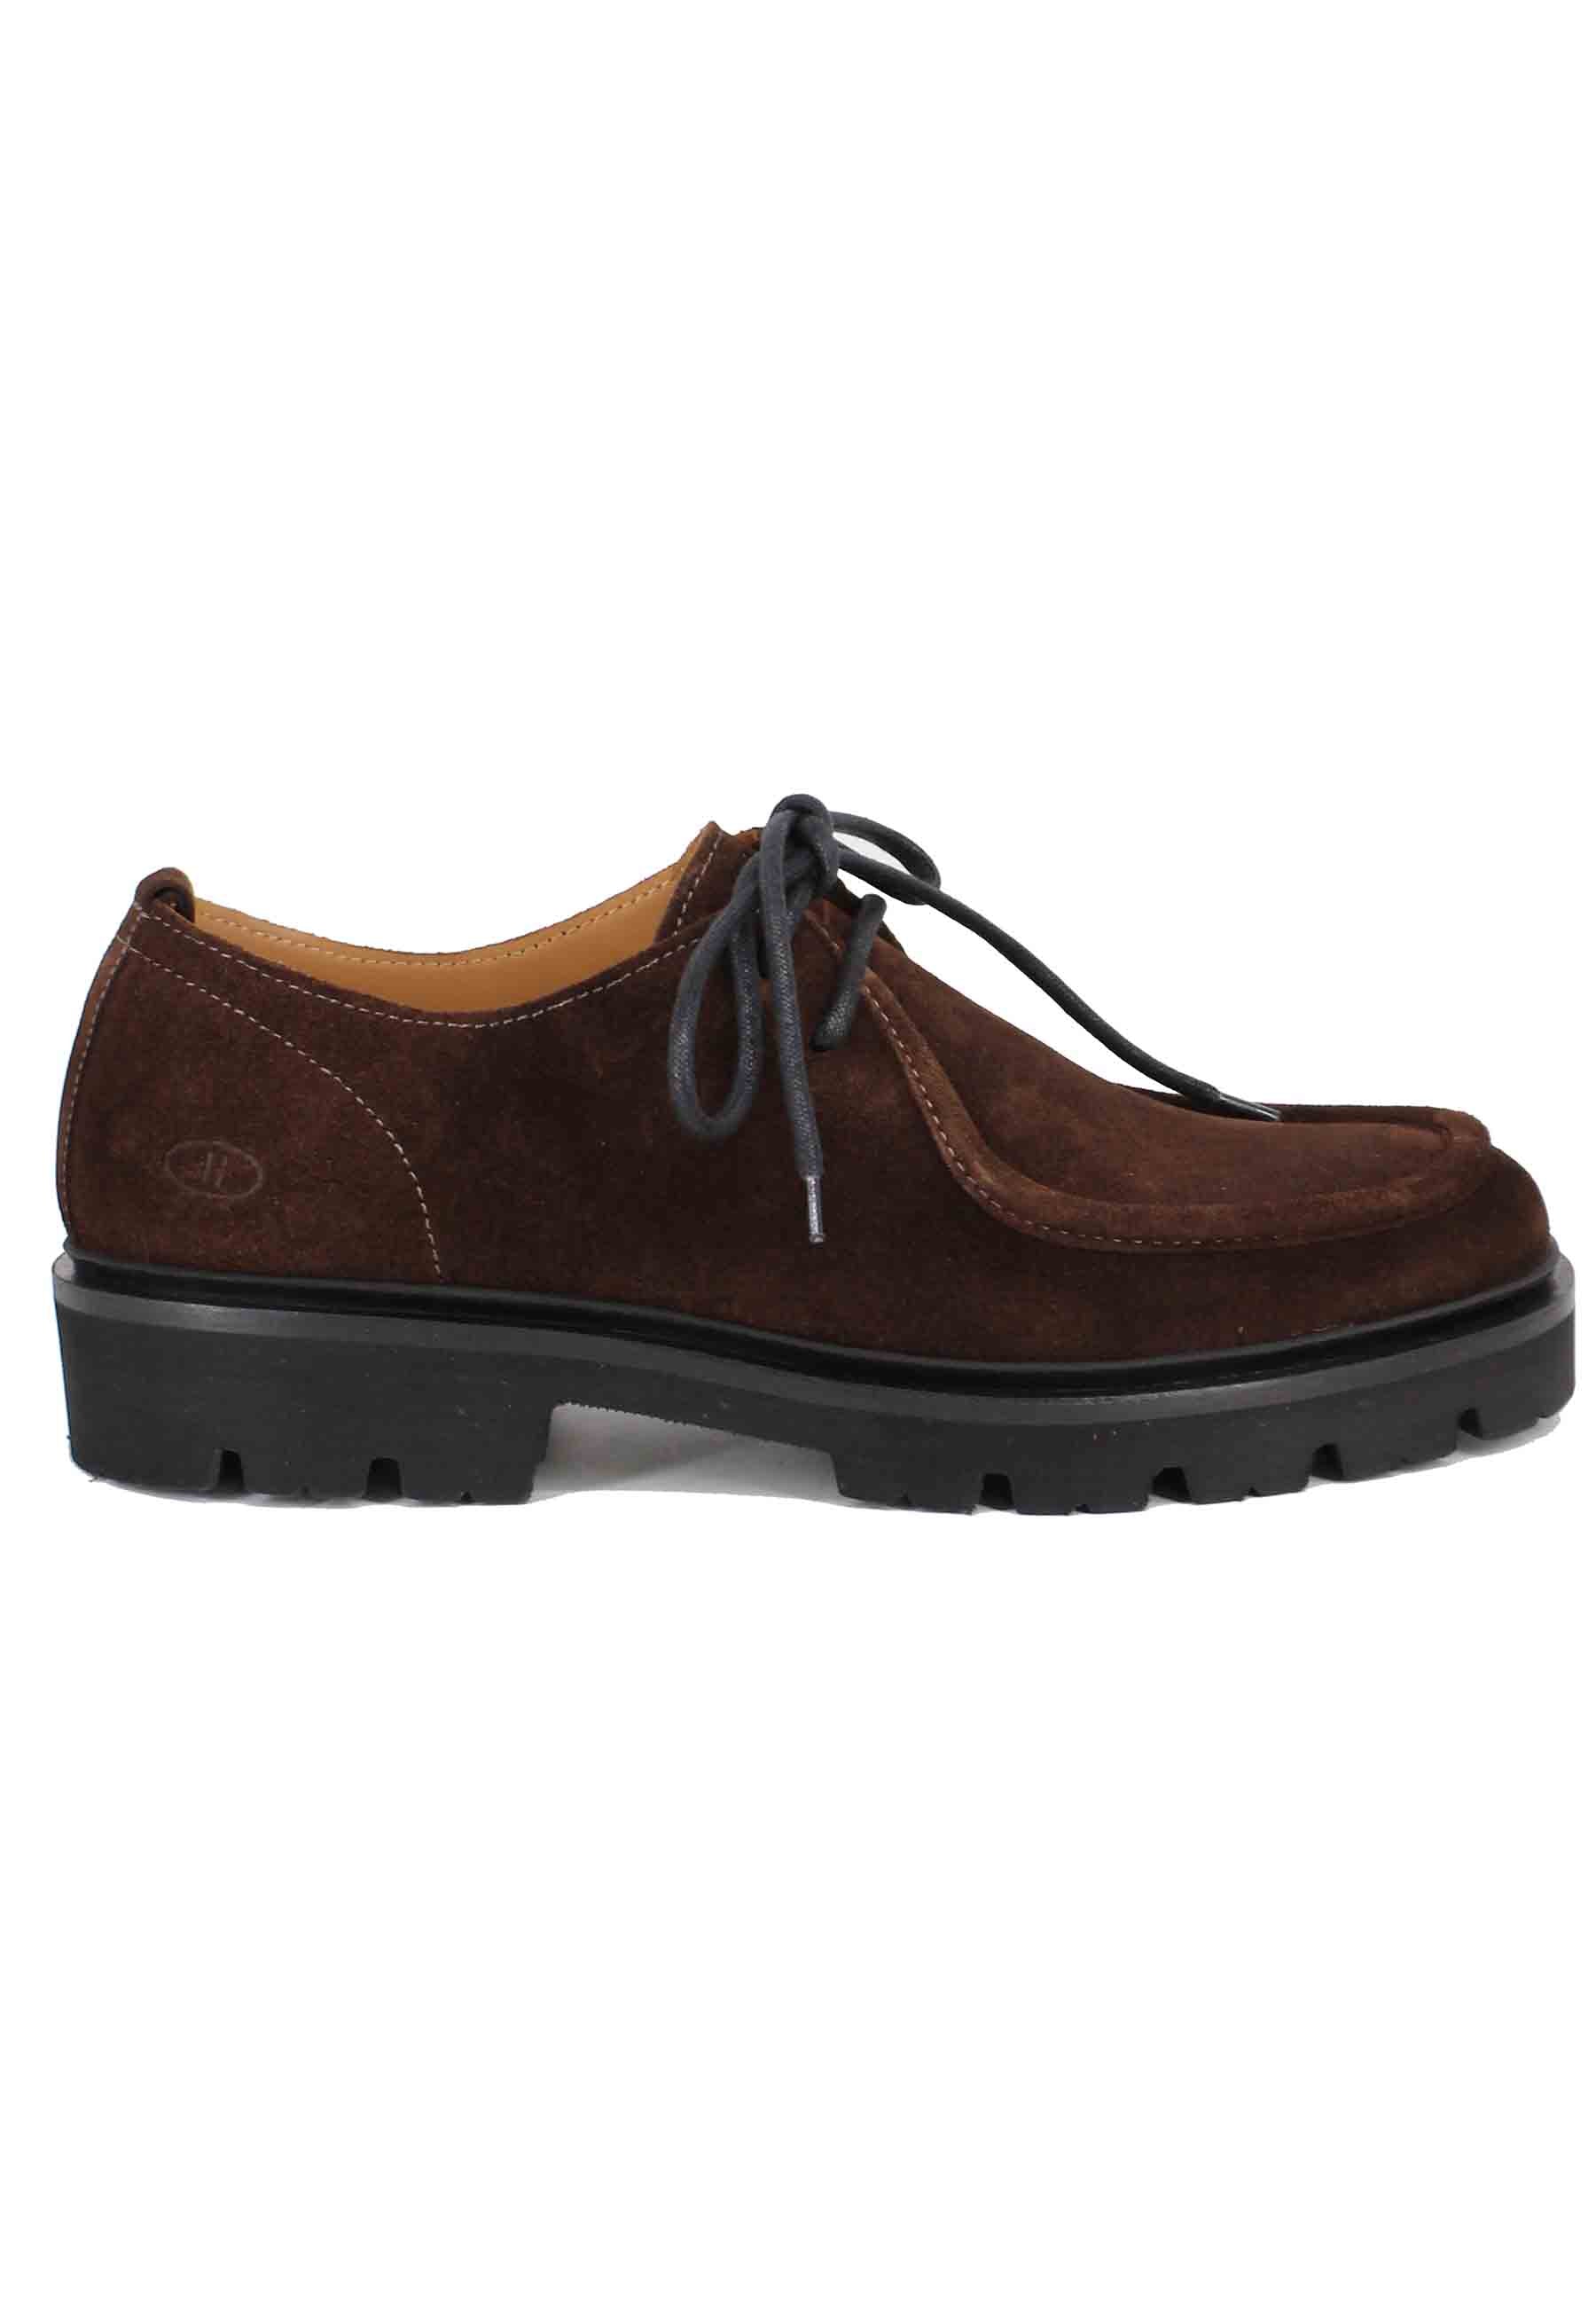 Chaussures à lacets pour hommes en daim marron foncé avec plateau cousu